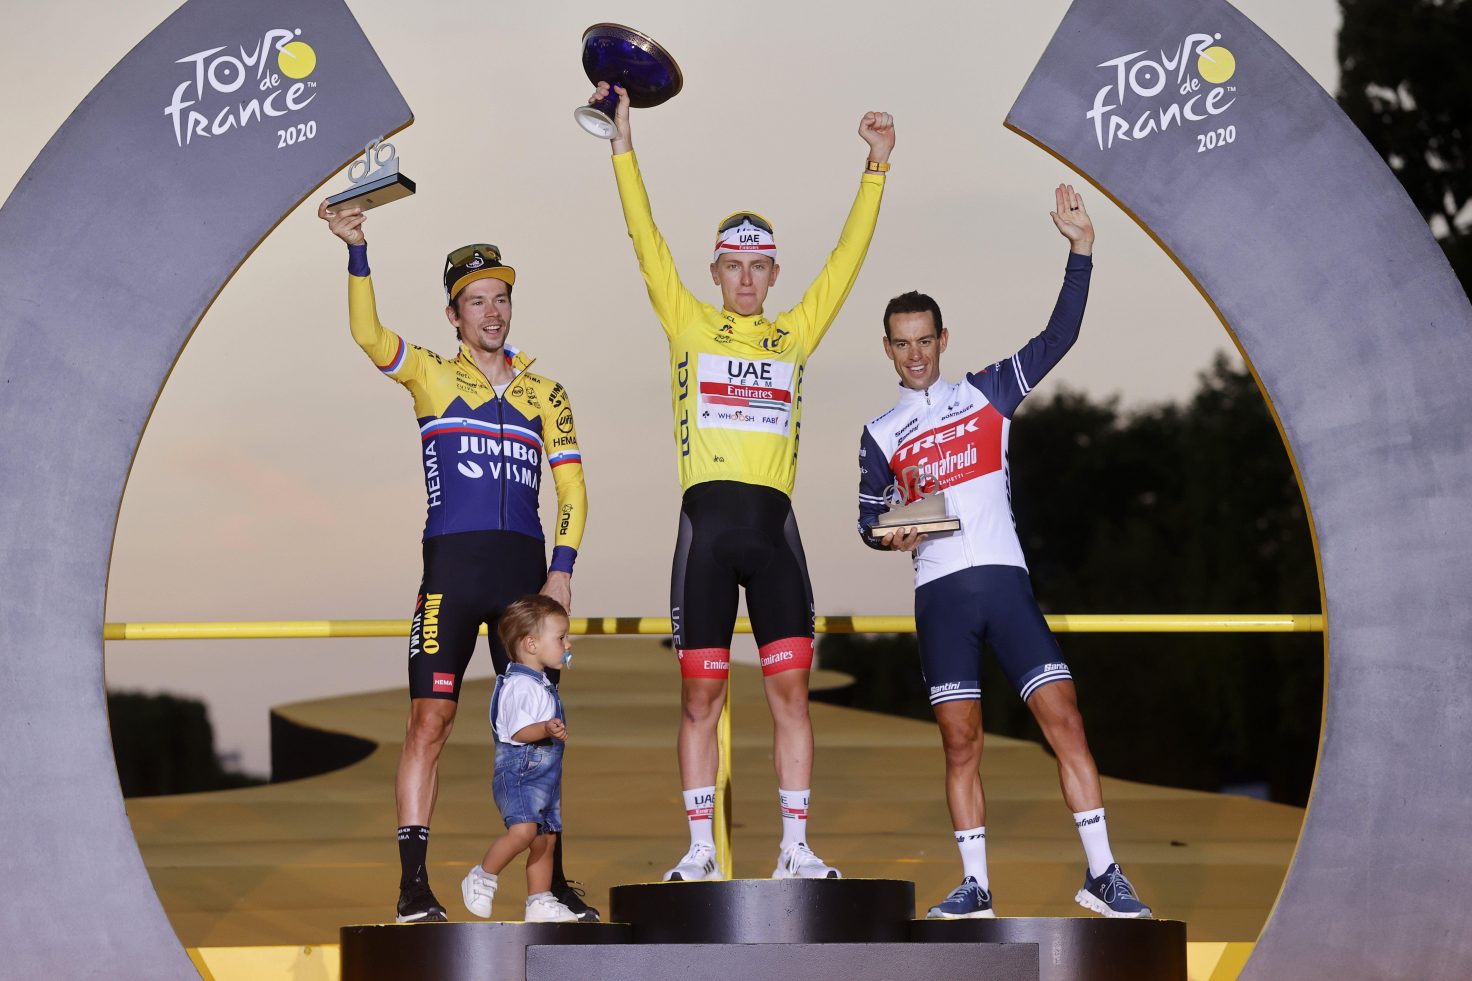 Tour de France 2020 podium